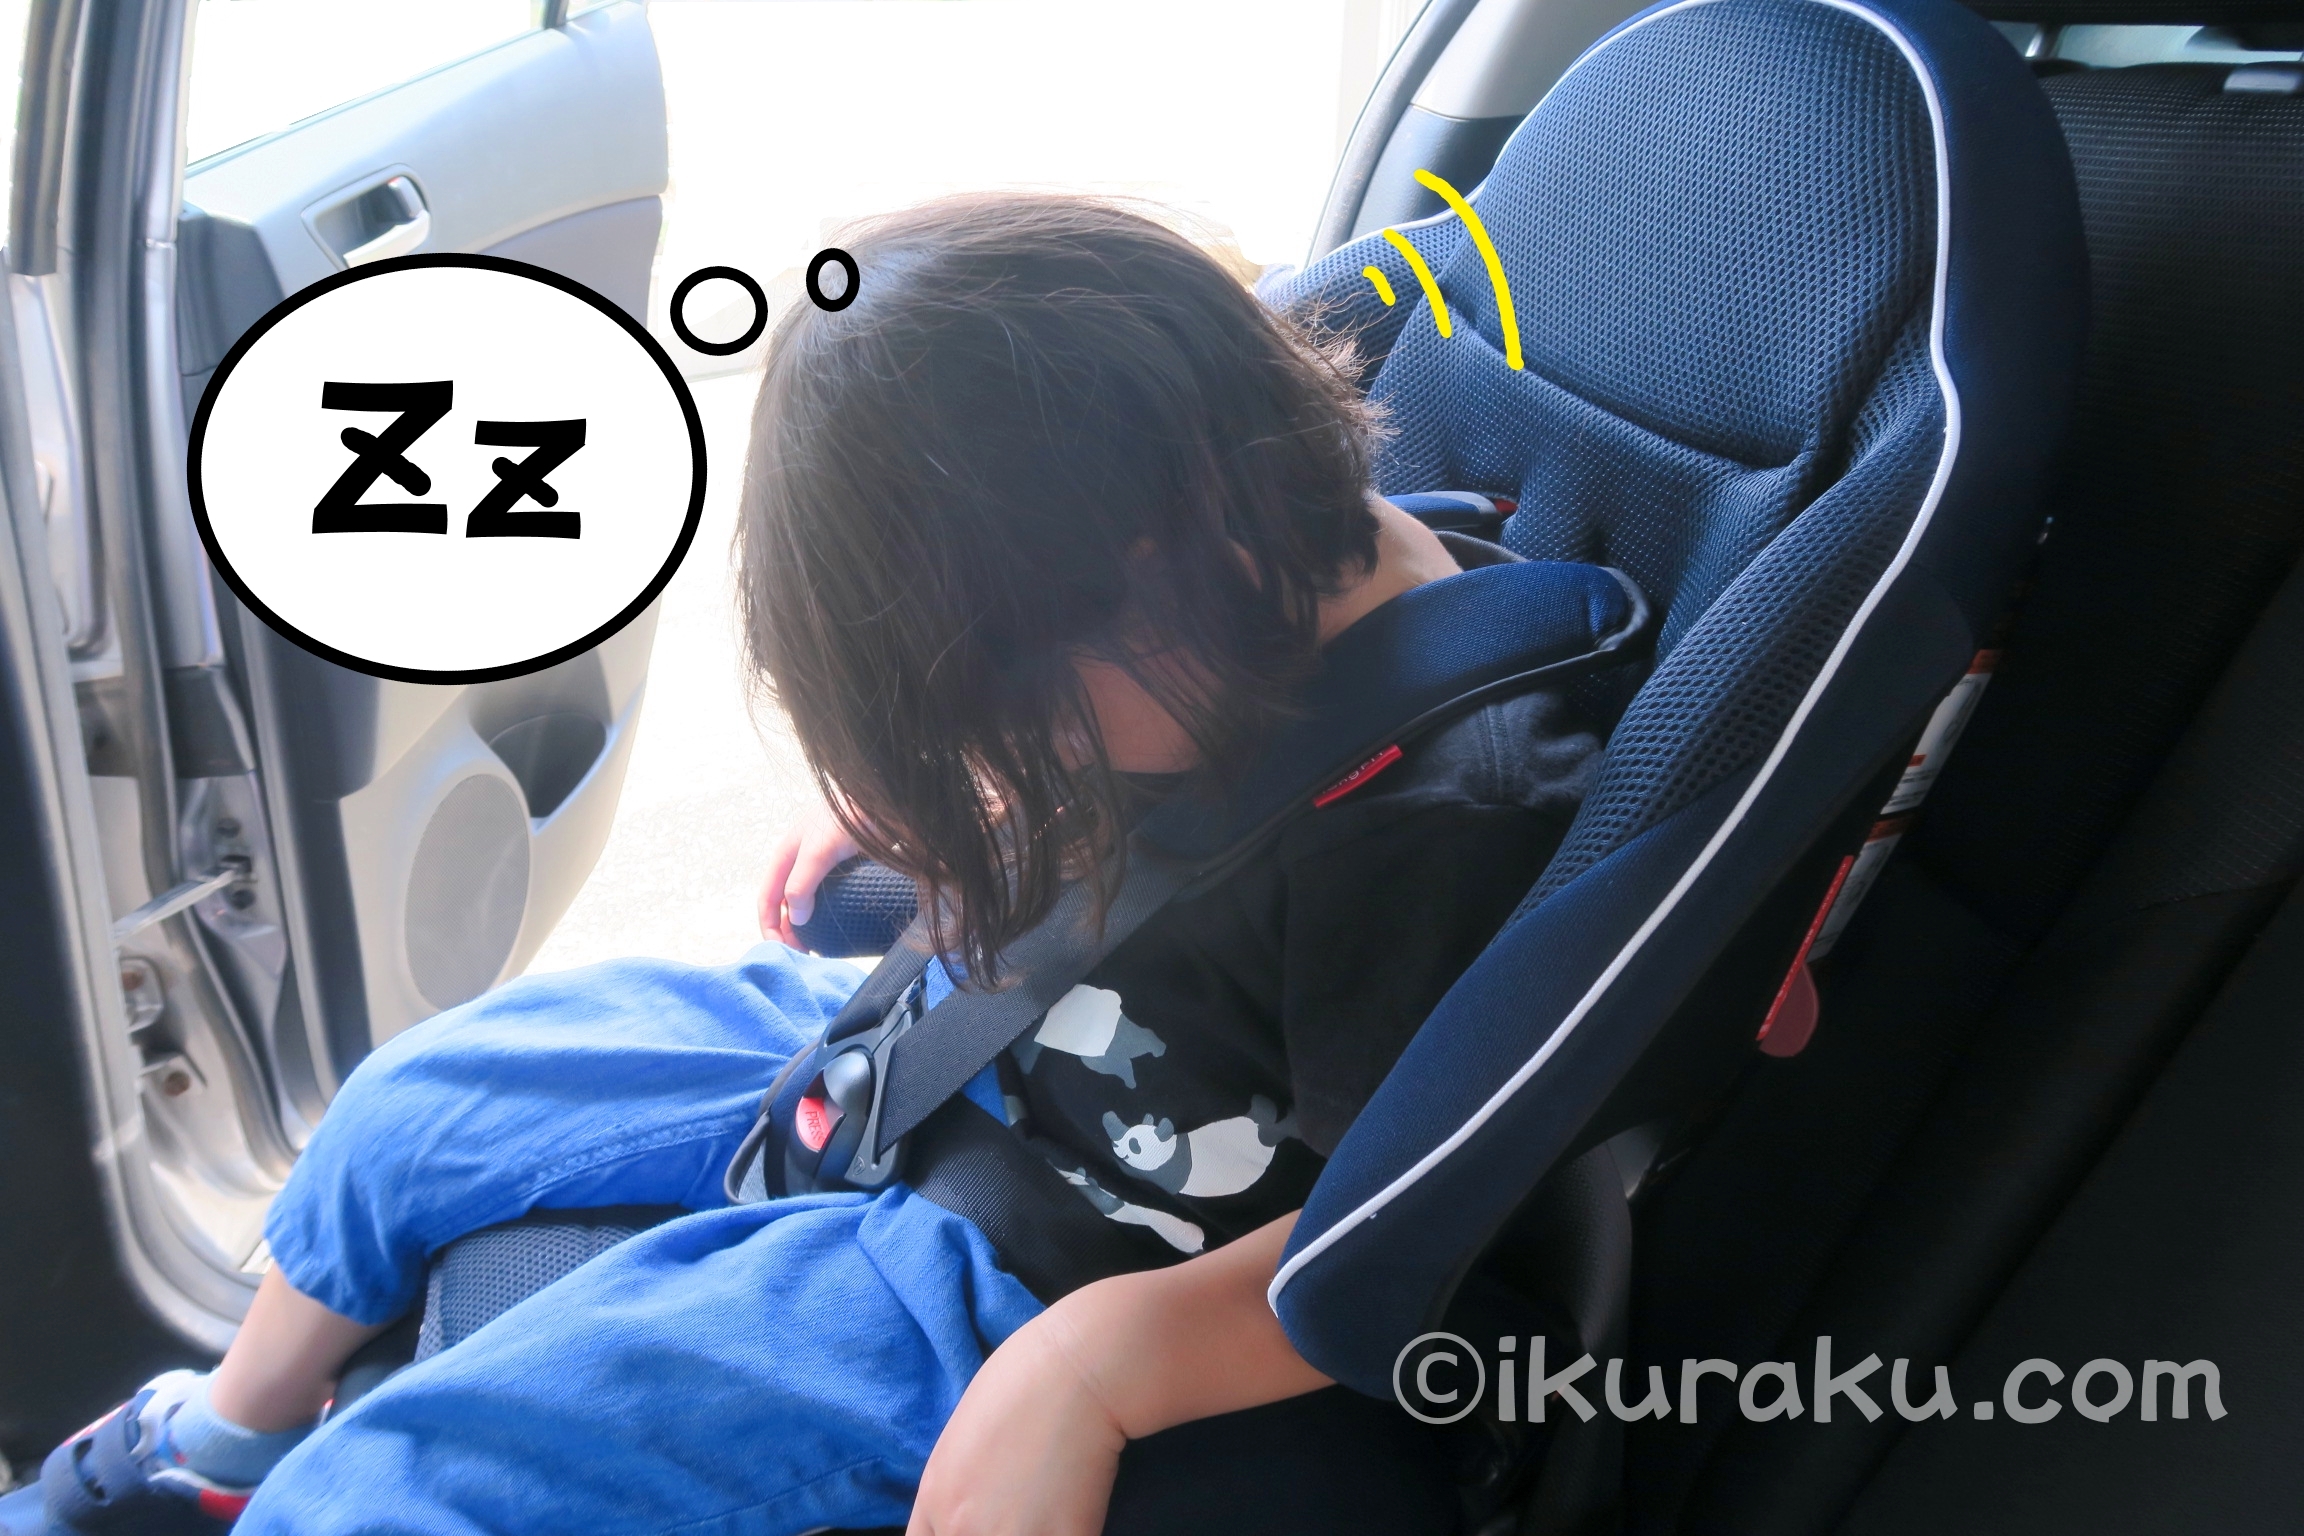 乳幼児の頭は大きく重いため、チャイルドシートで寝てしまうと前のめりになりやすい